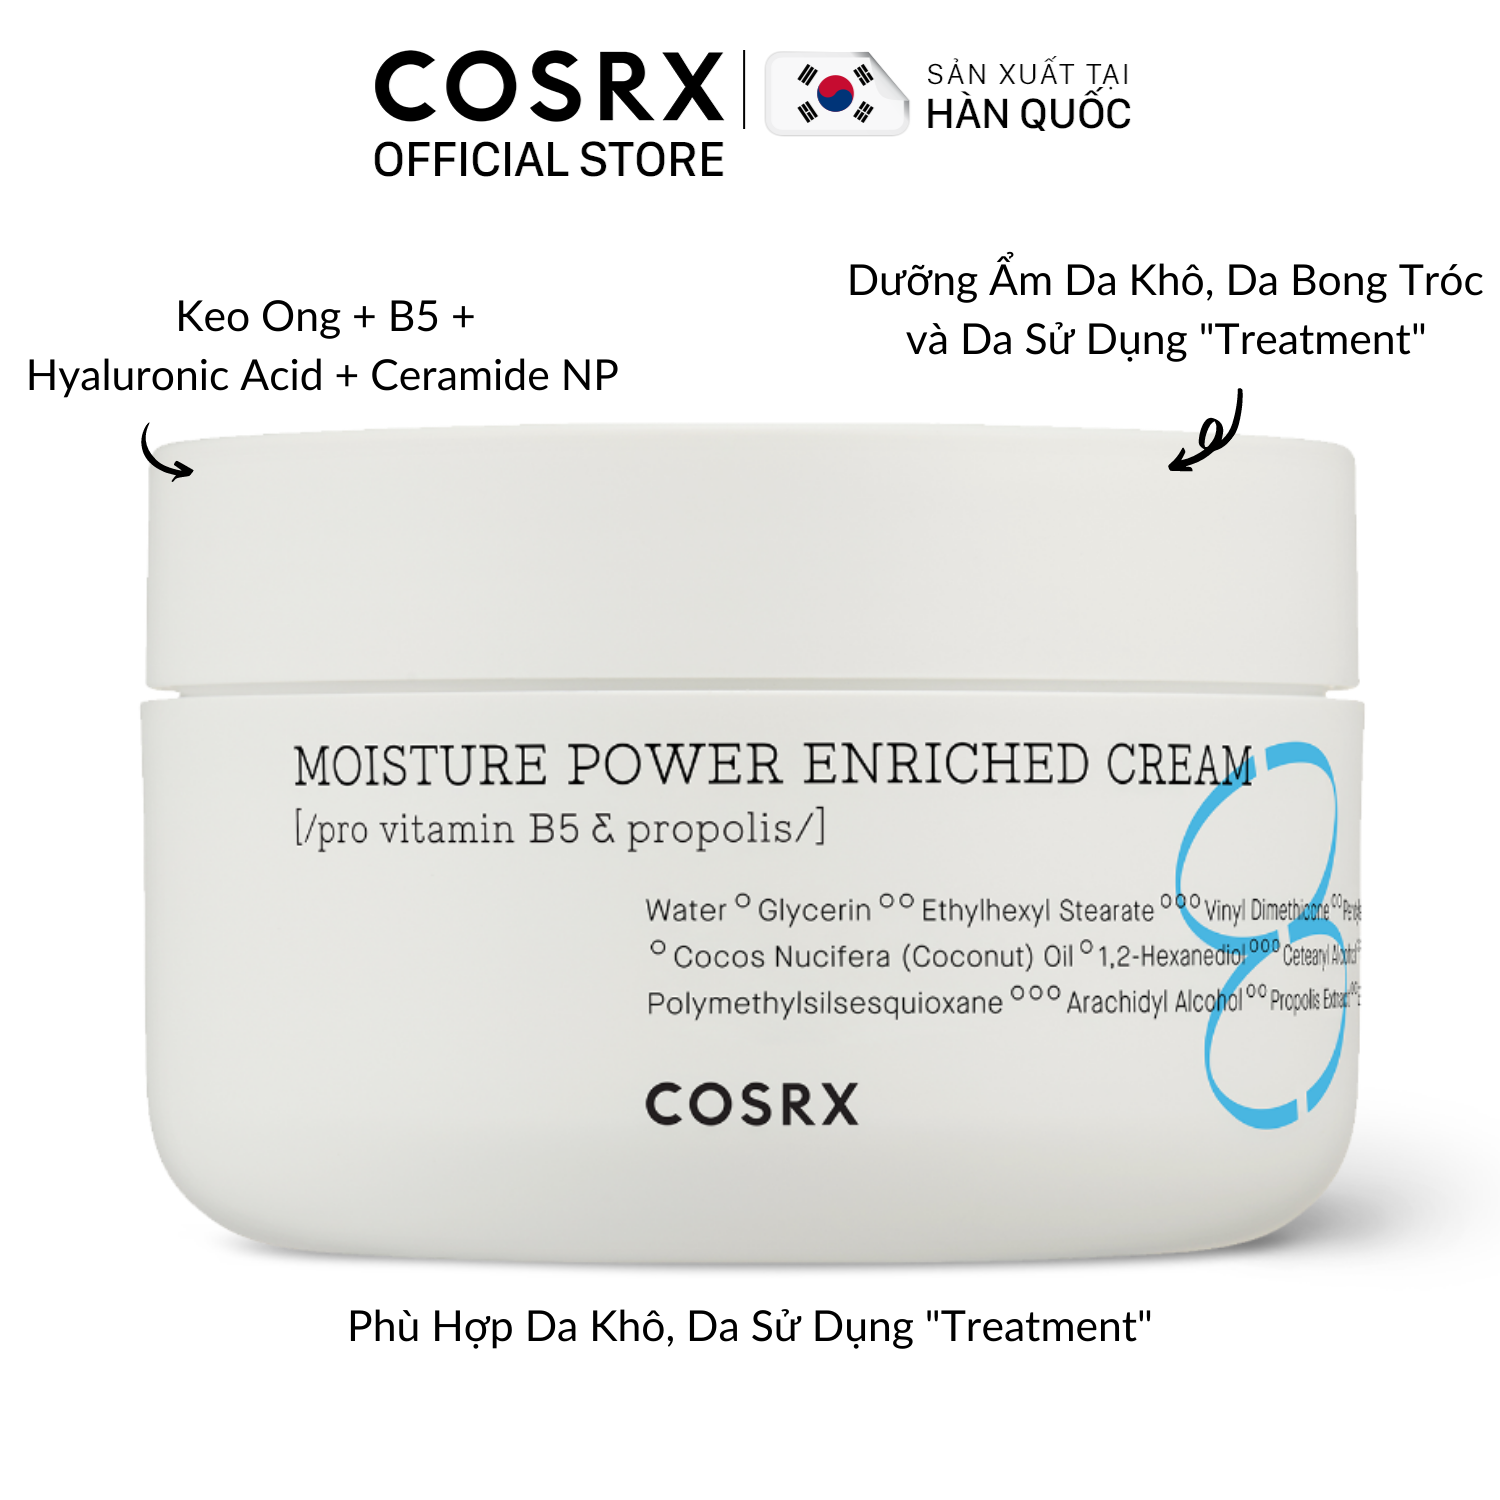 Kem Dưỡng Cấp Ẩm Chuyên Sâu (Keo Ong + B5) COSRX Hydrium Moisture Power Enriched Cream 50ml